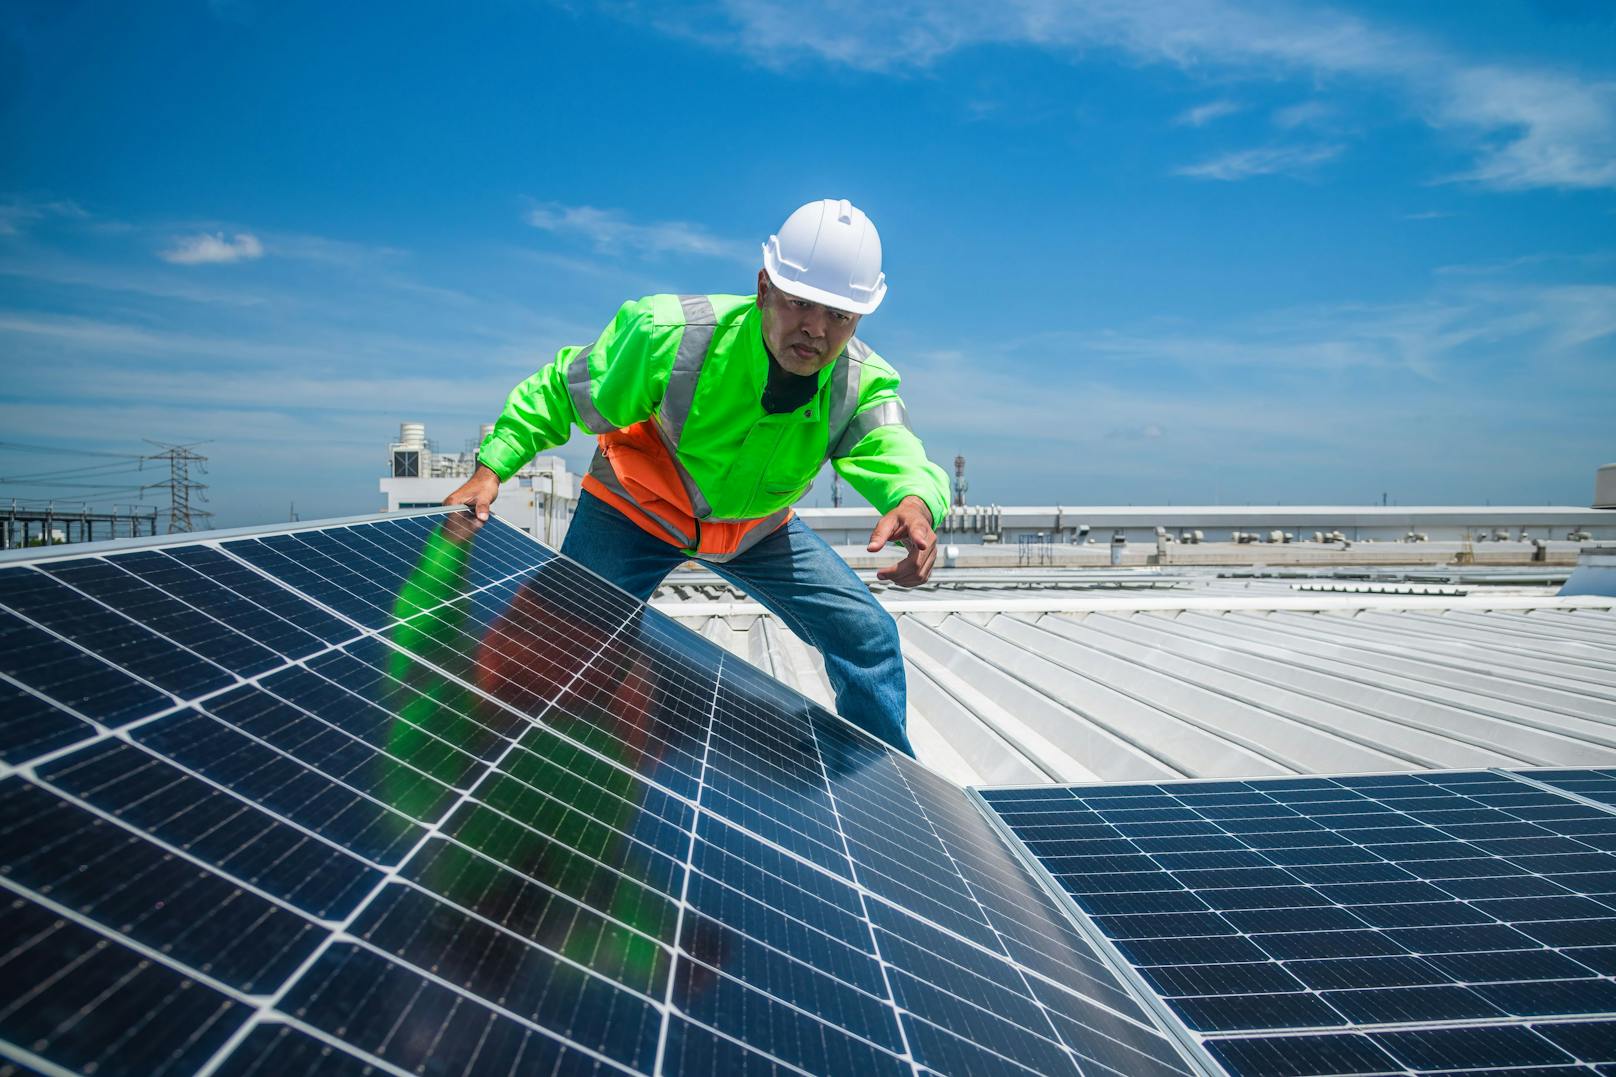 Lotterie zur Förderung von Photovoltaik-Anlagen startet